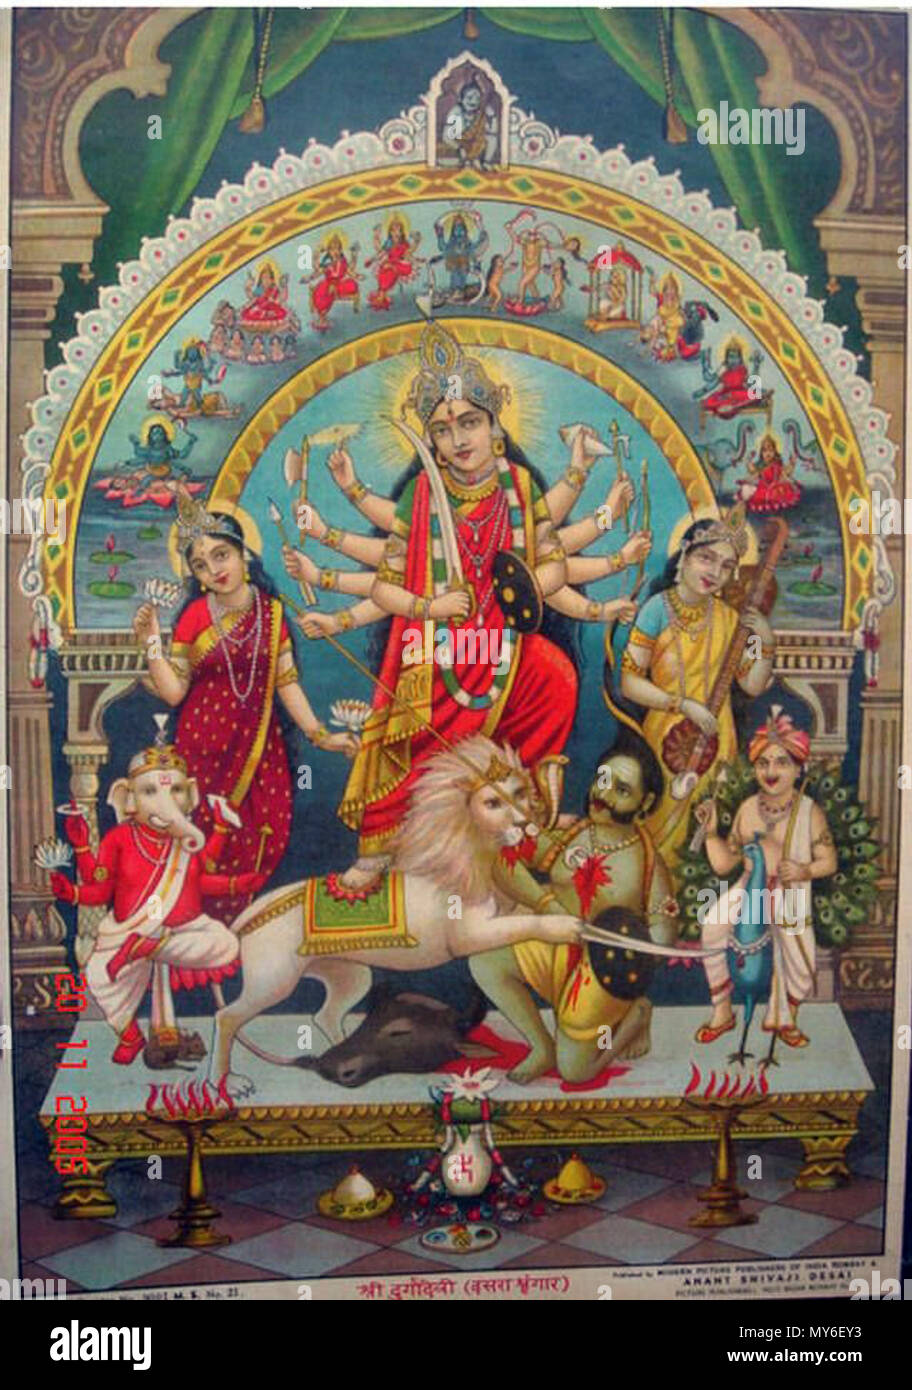 . Englisch: Ein Bild von Durga unter einem Bogen anzeigen Der Mahavidyas, mit Shiva an der Spitze; 1930 Quelle: ebay, 26.04.2006. 1930. Unbekannt 149 Durga 1930s Stockfoto